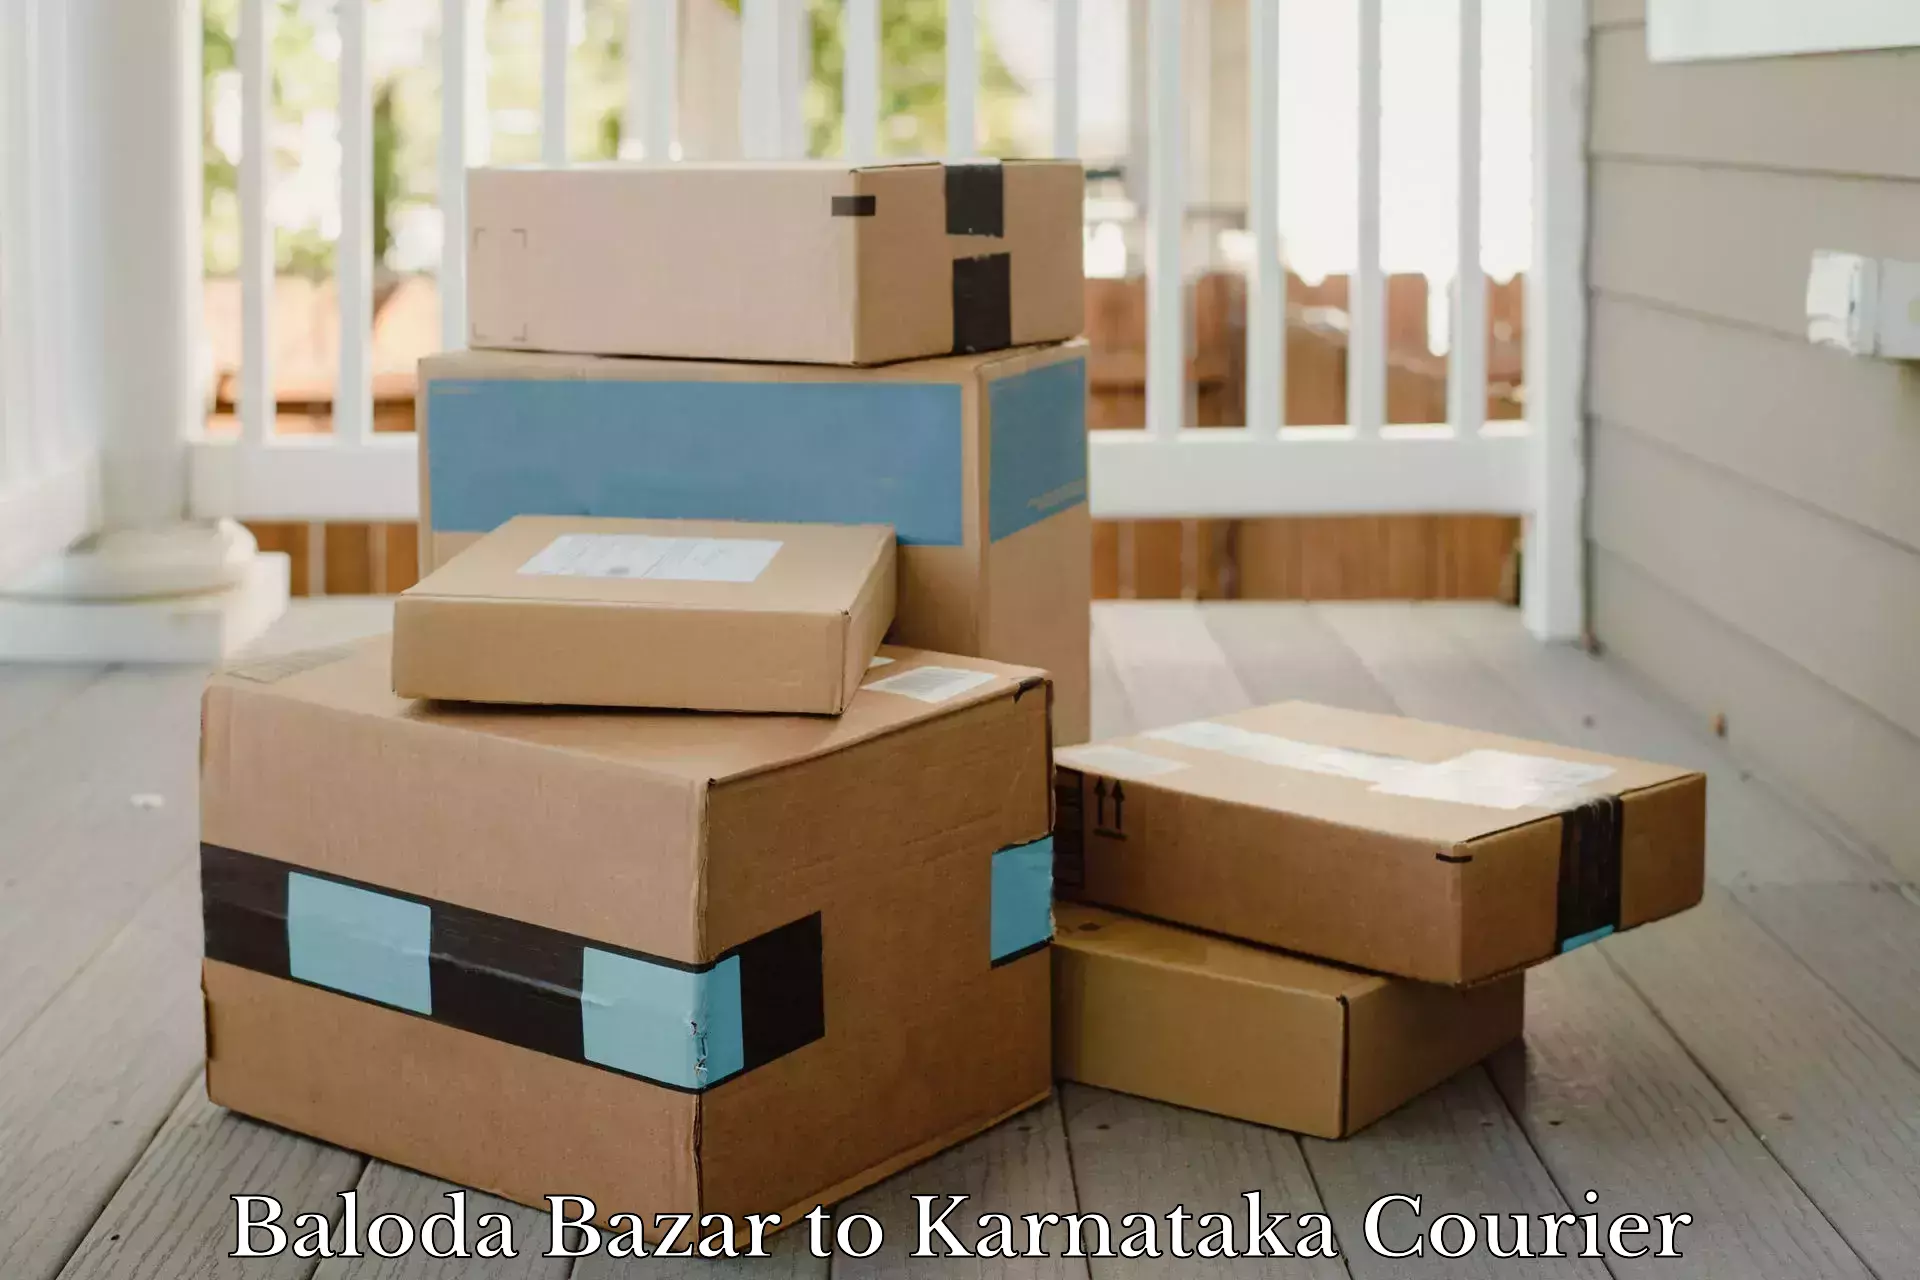 Customer-oriented courier services Baloda Bazar to Anavatti